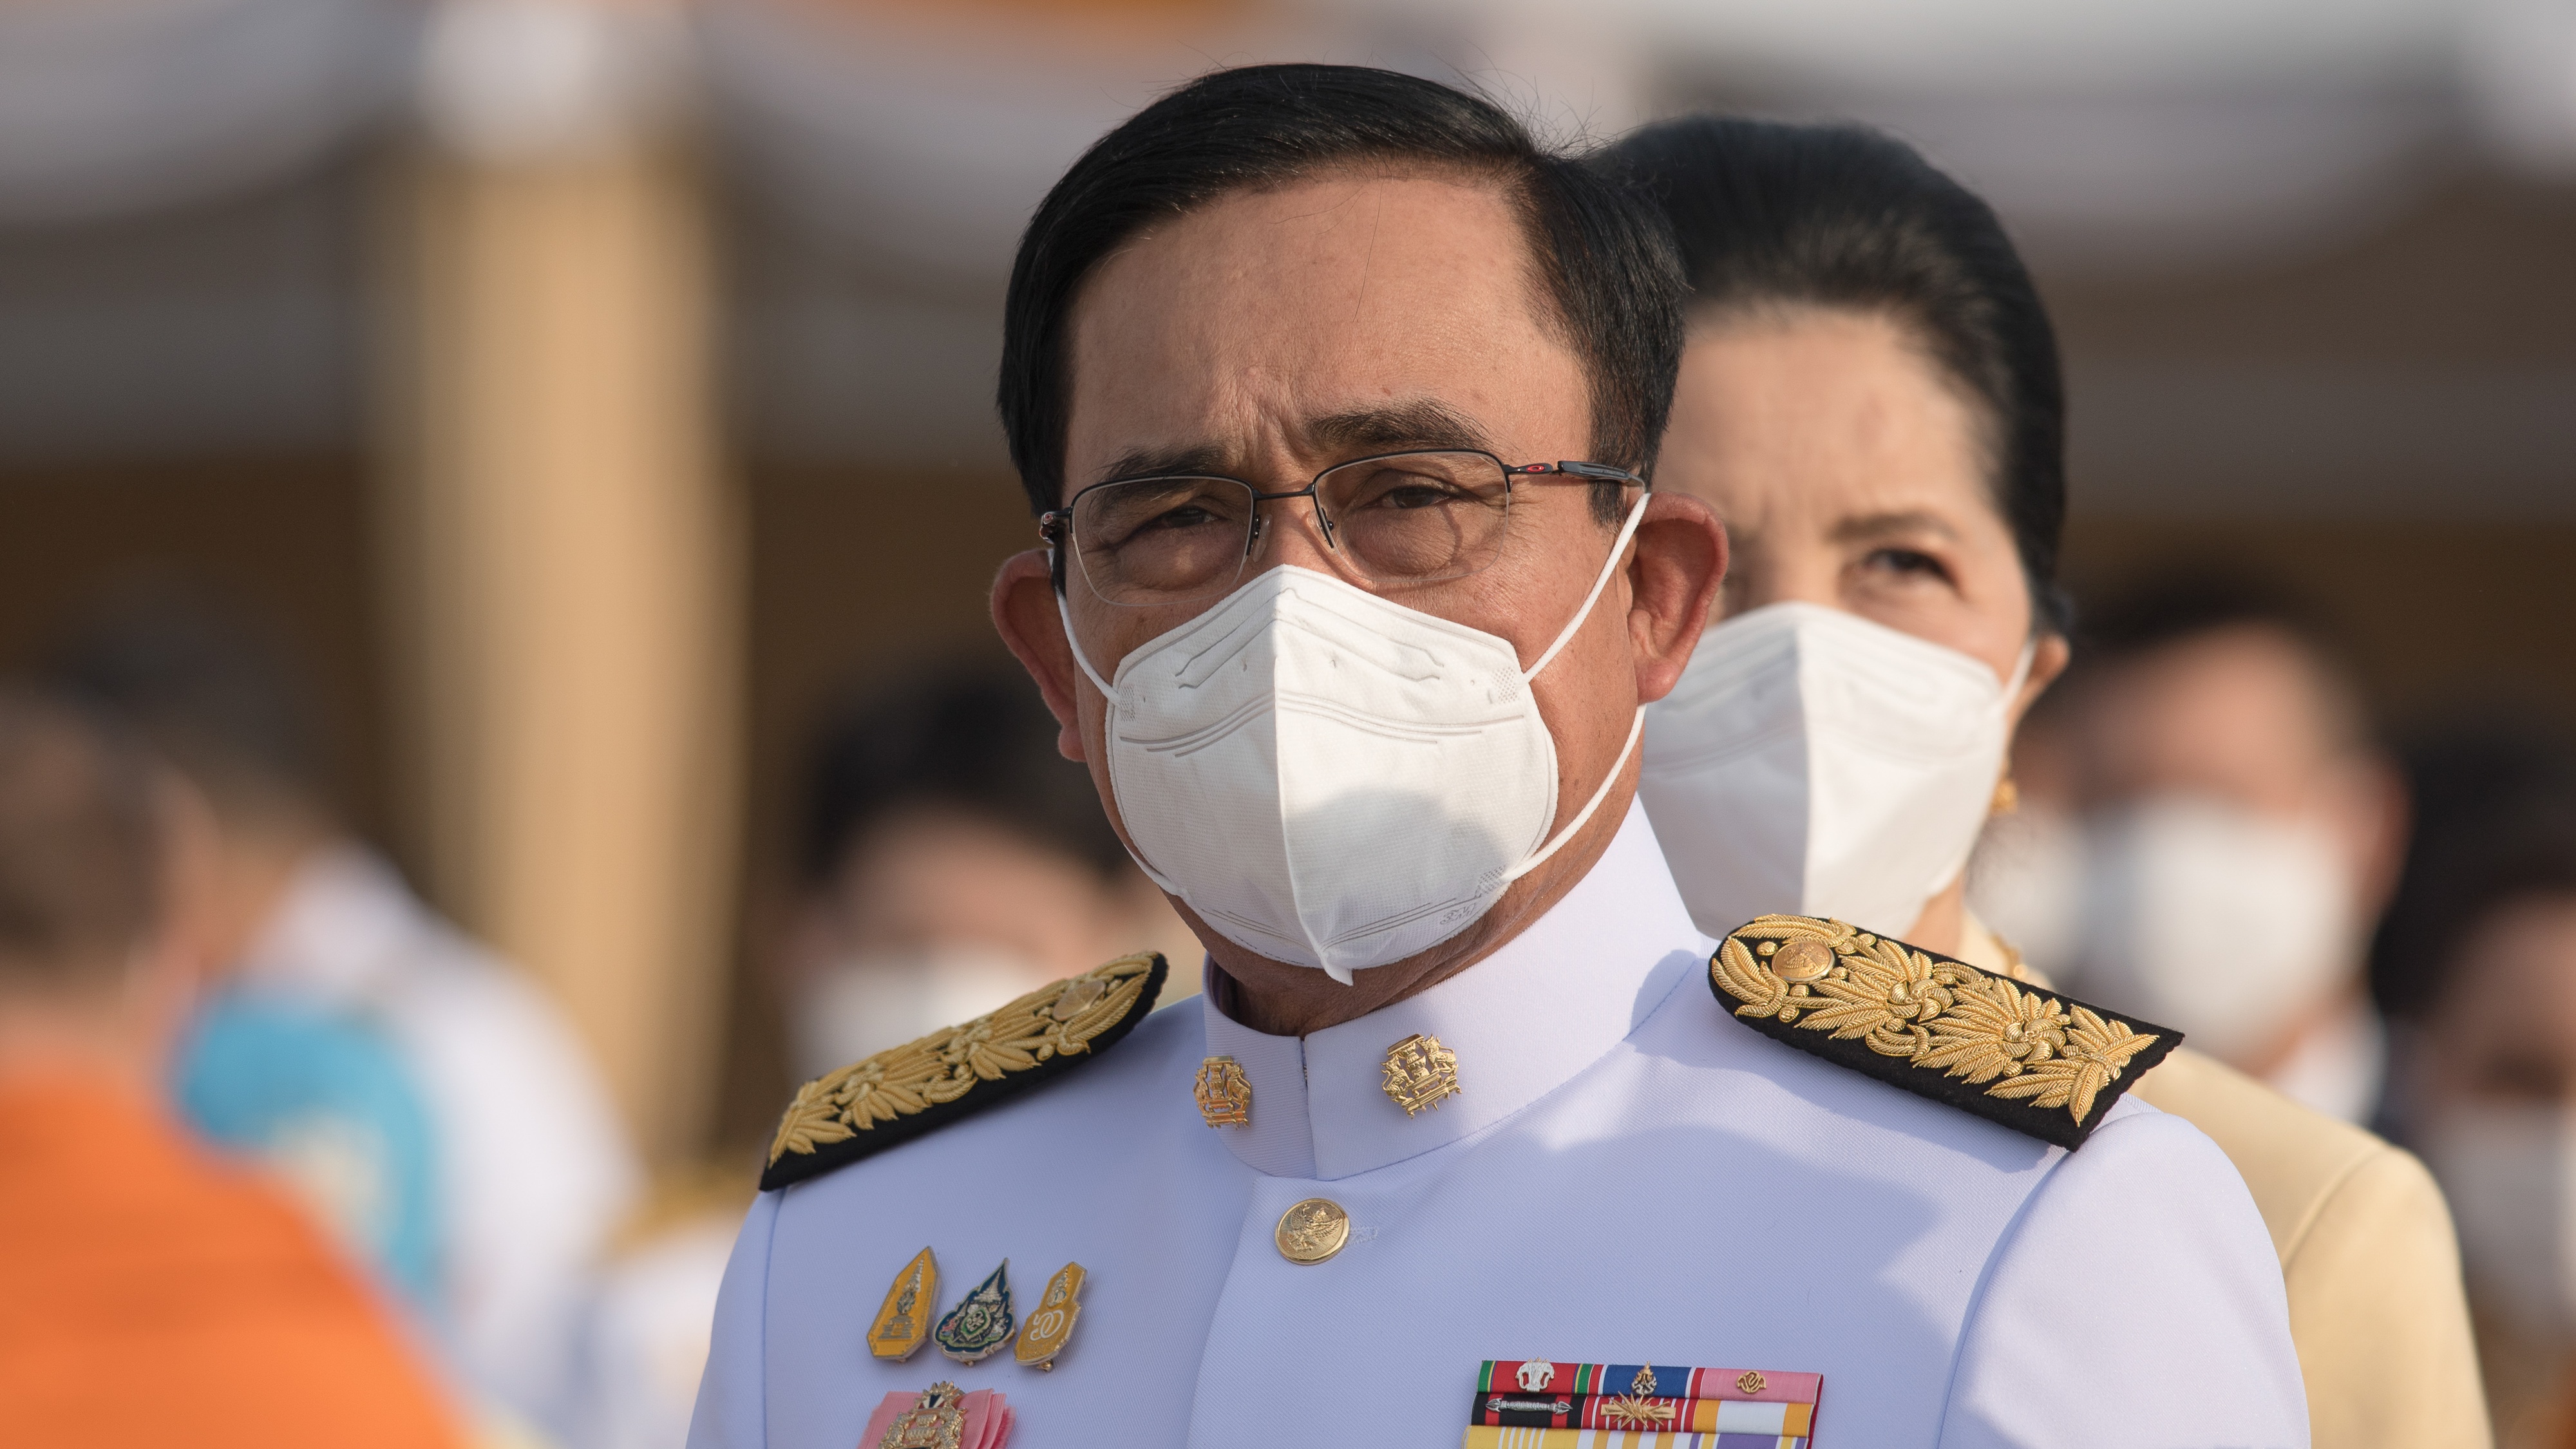 Thai Prime Minister Prayut Chan-ocha